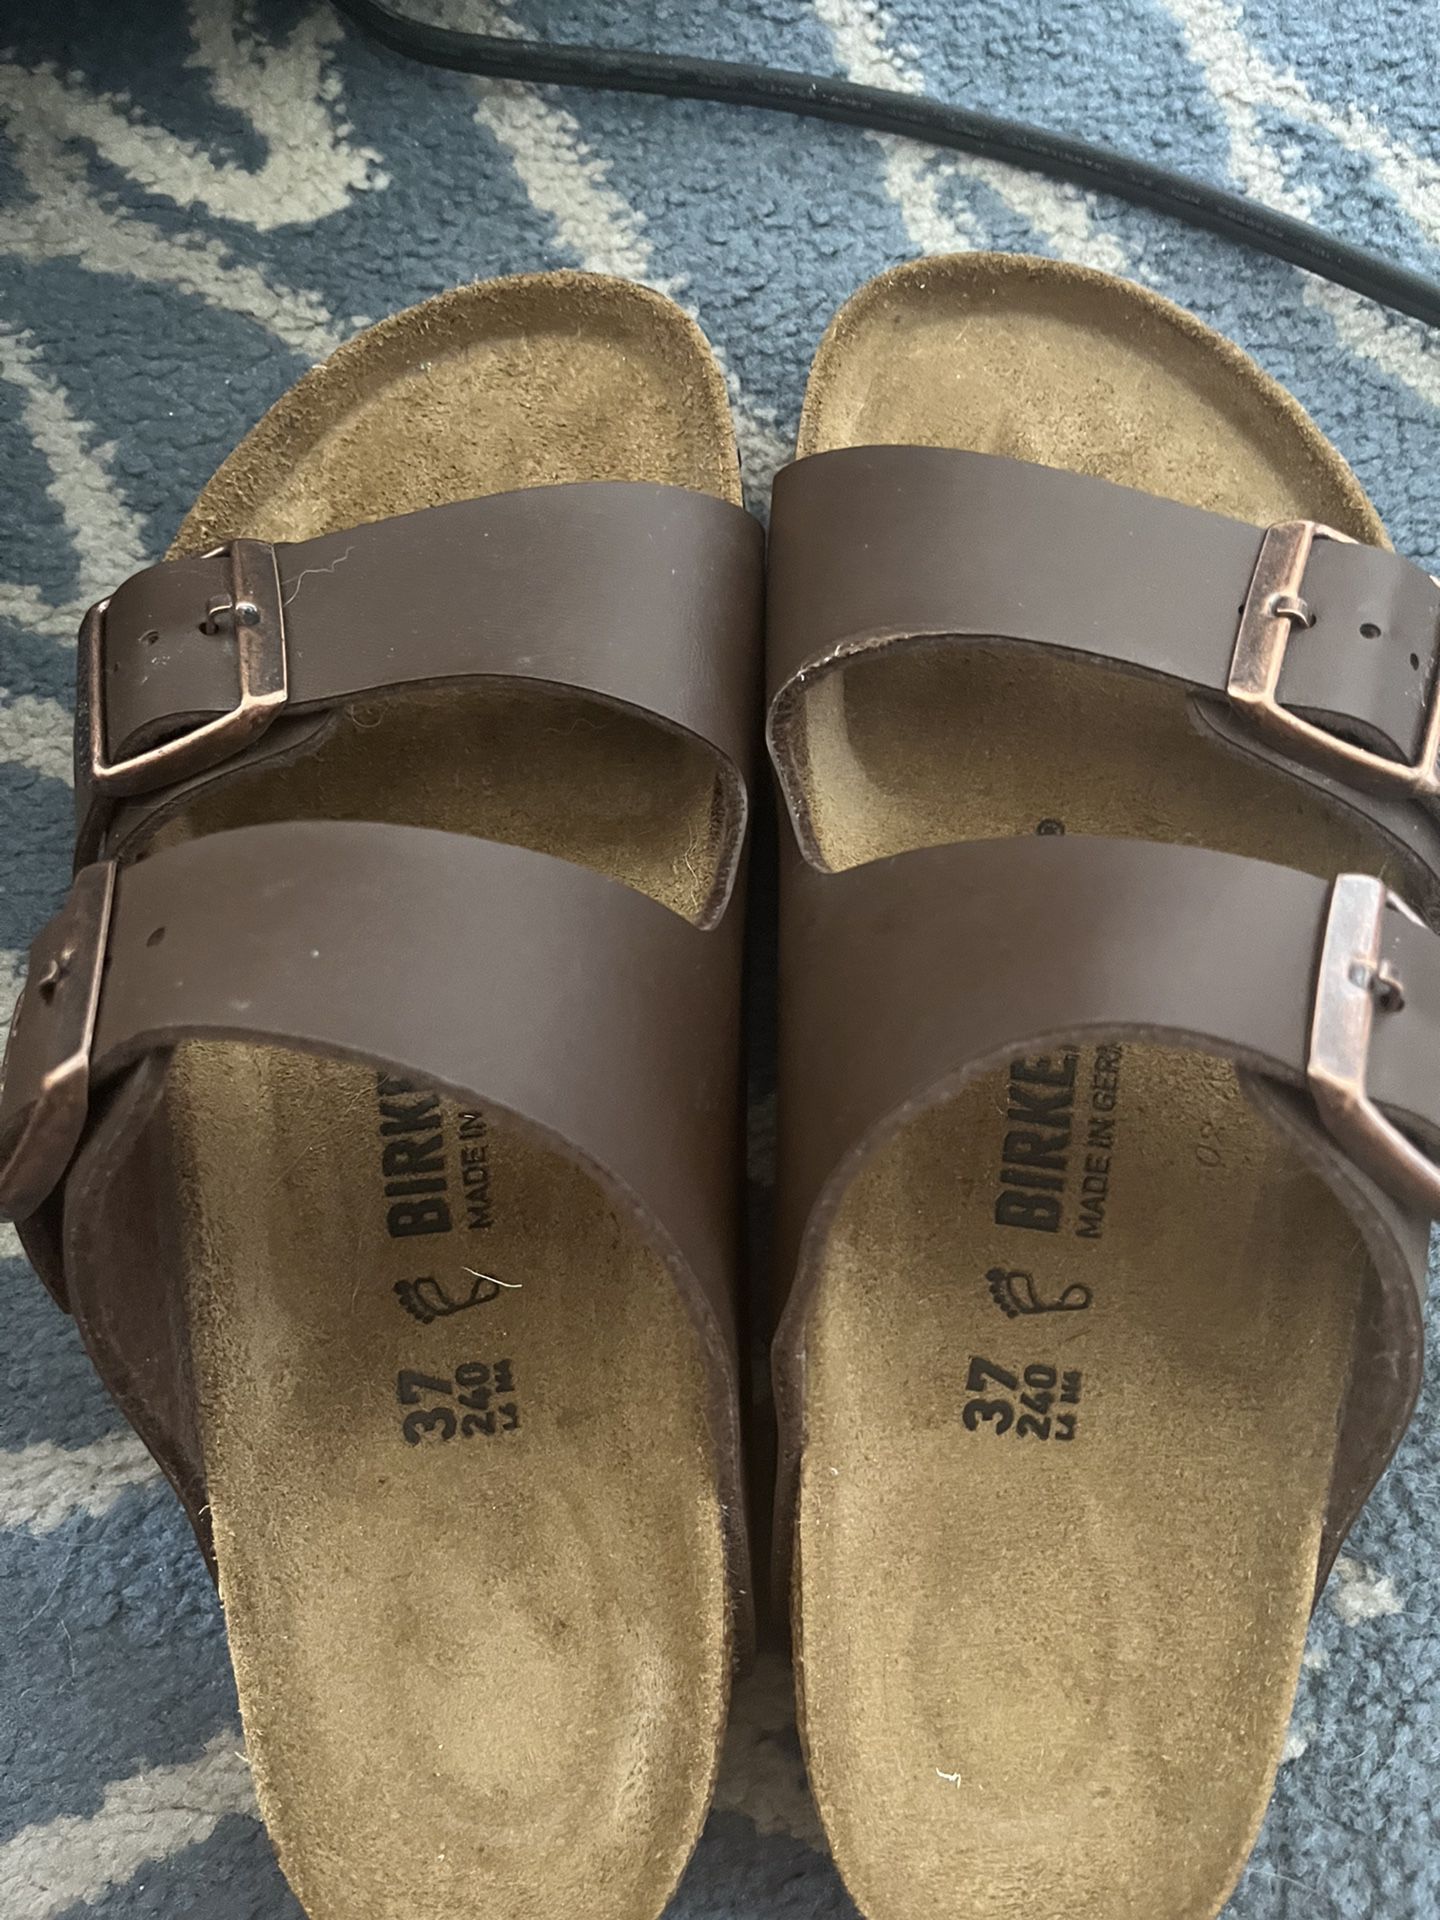 Birkenstock Sandals Size 6.5 (37)